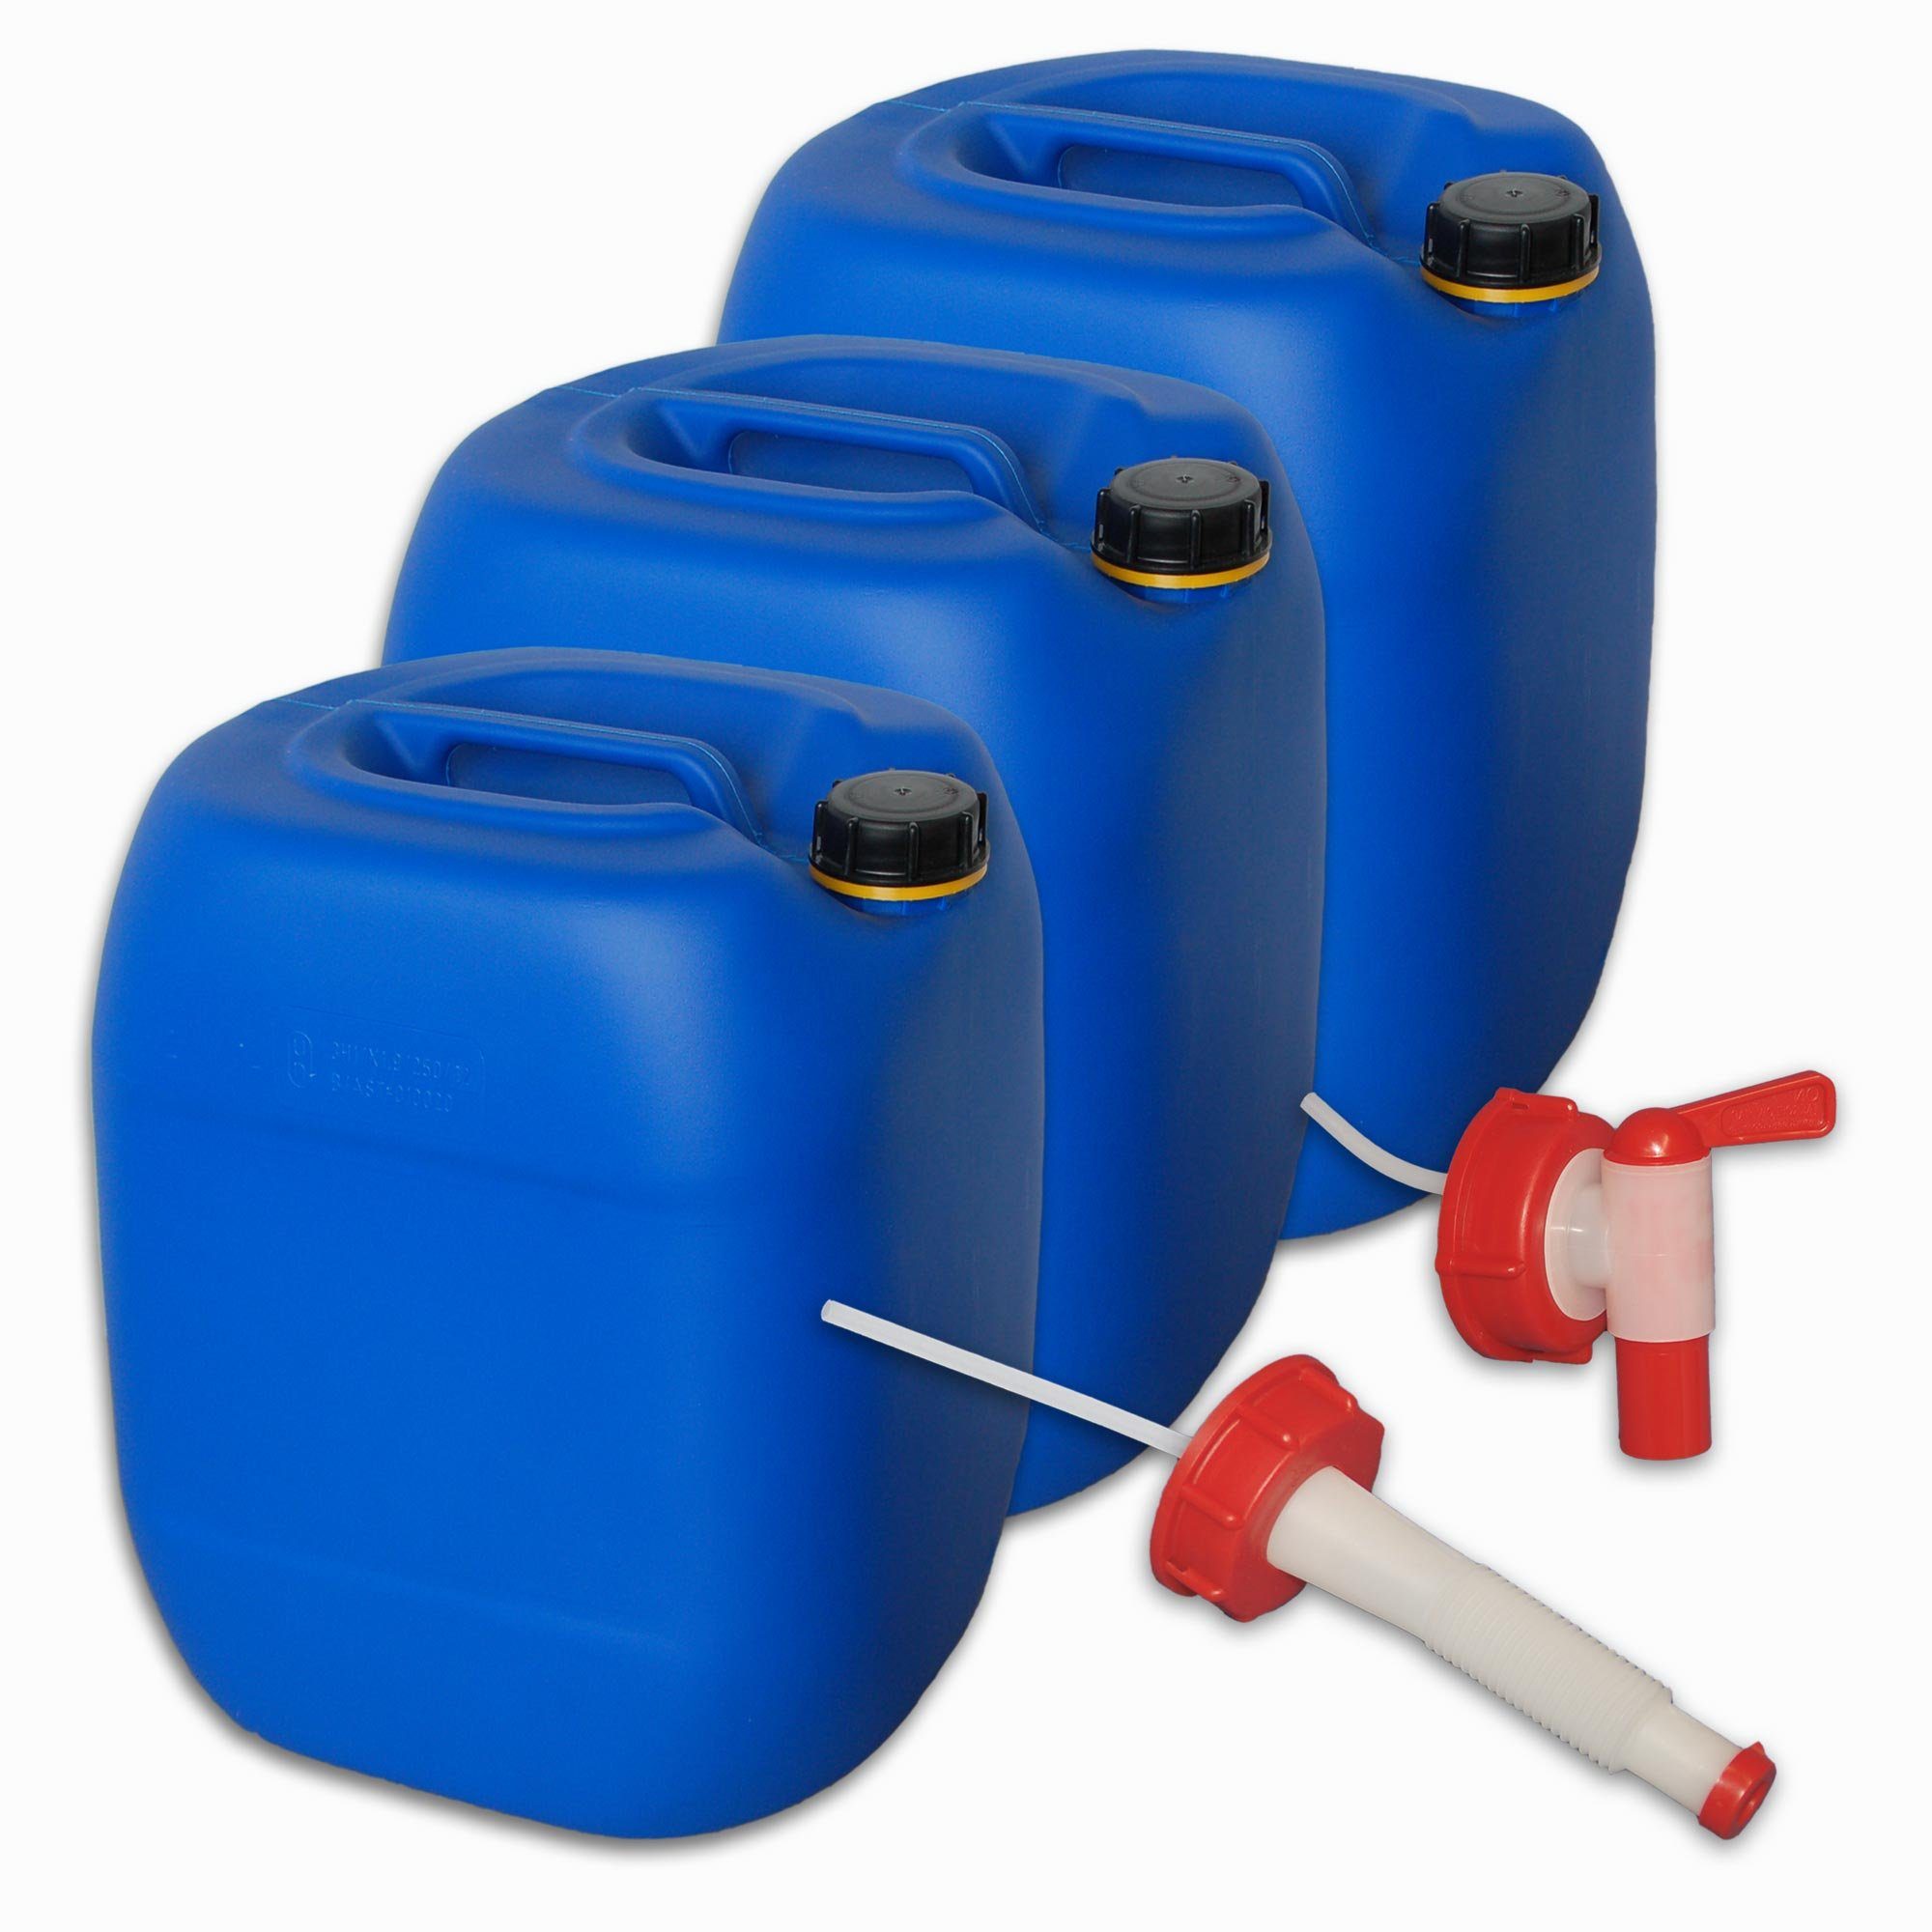 Kunststoff Kanister blau 10 Liter UN stapelbar mit Auslaufhahn DIN 51